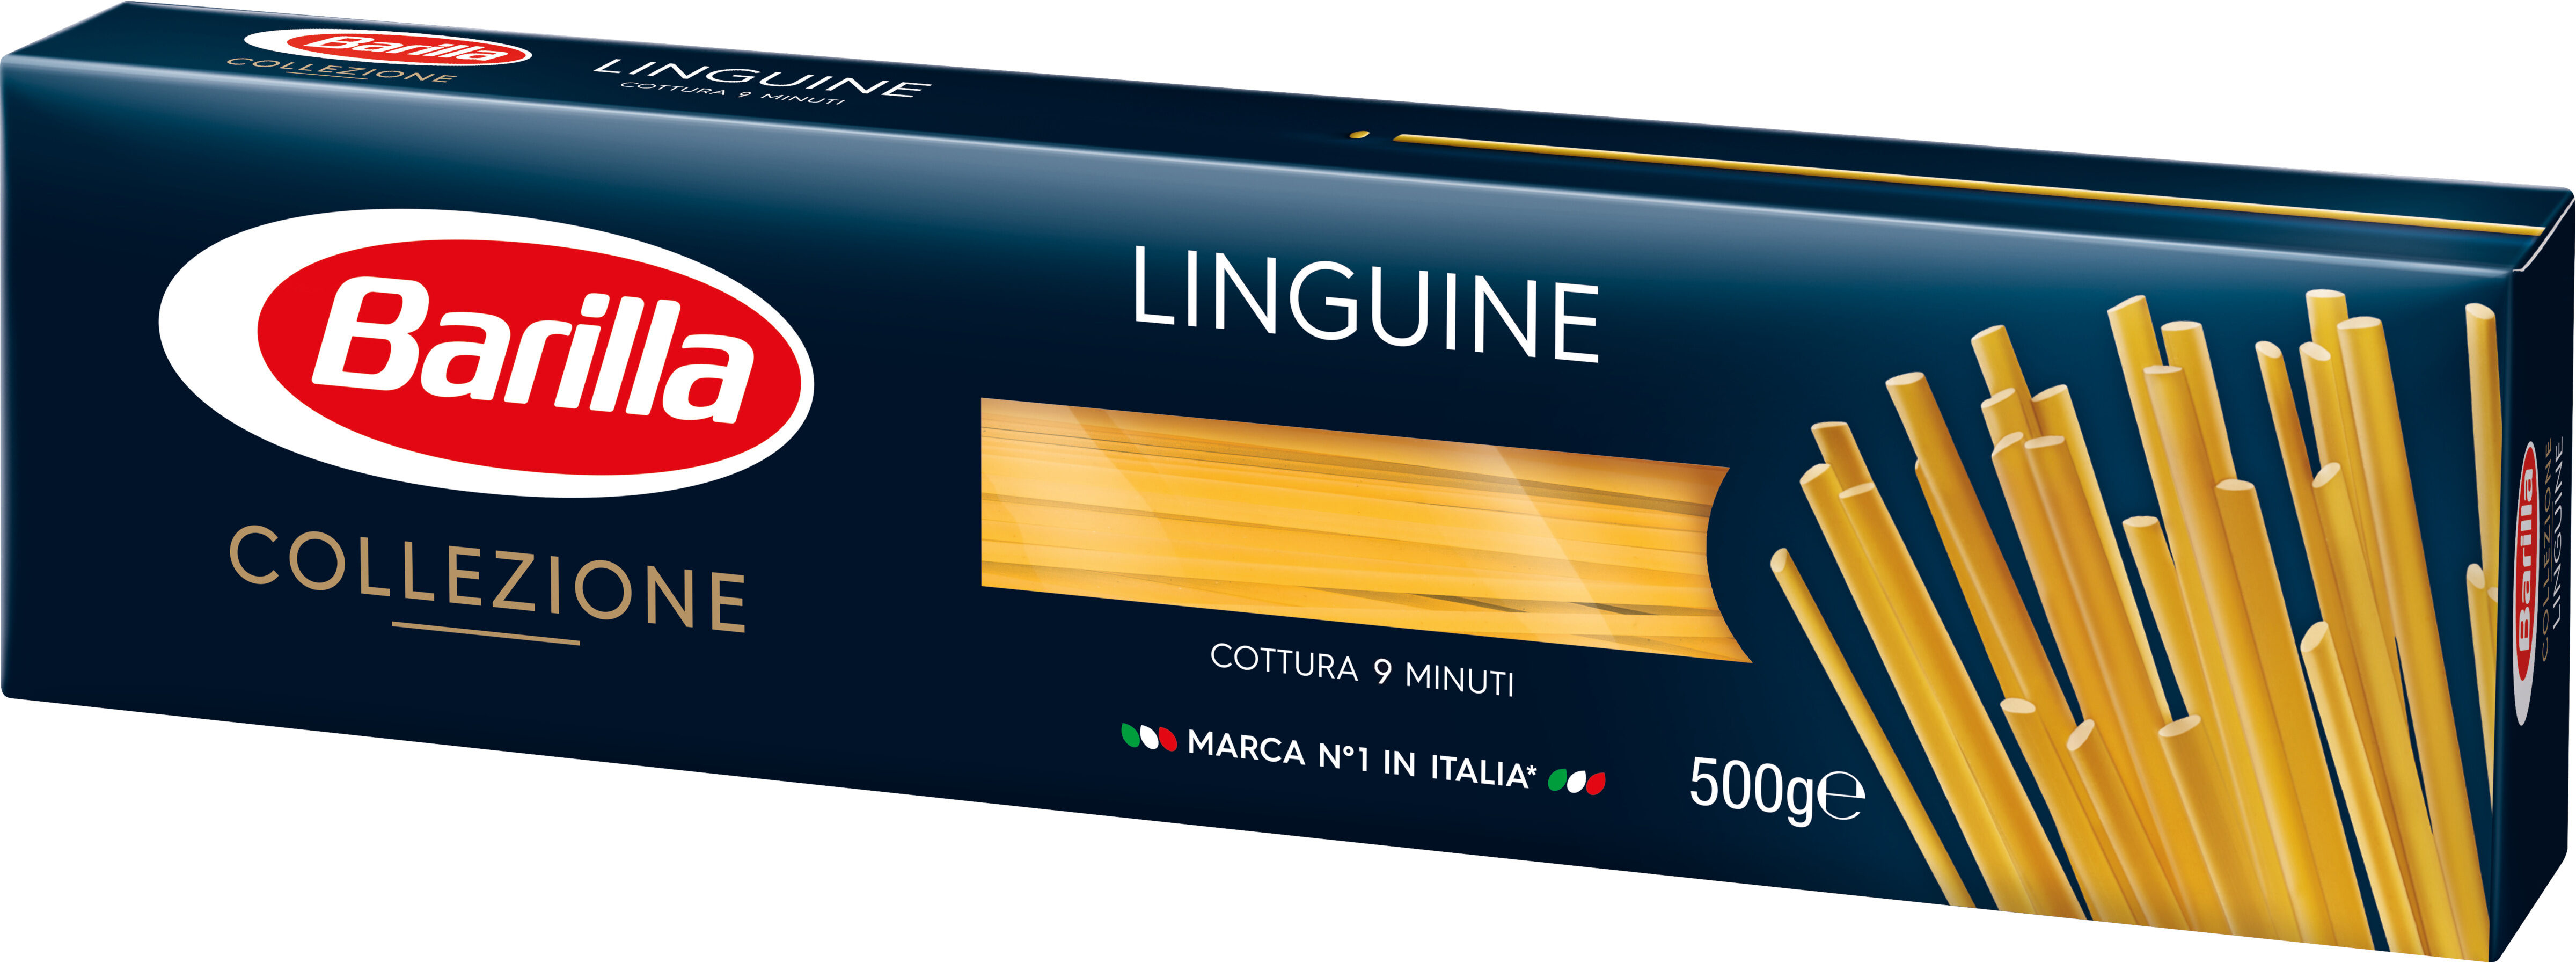 Barilla pates collezione linguine 500g - Prodotto - fr